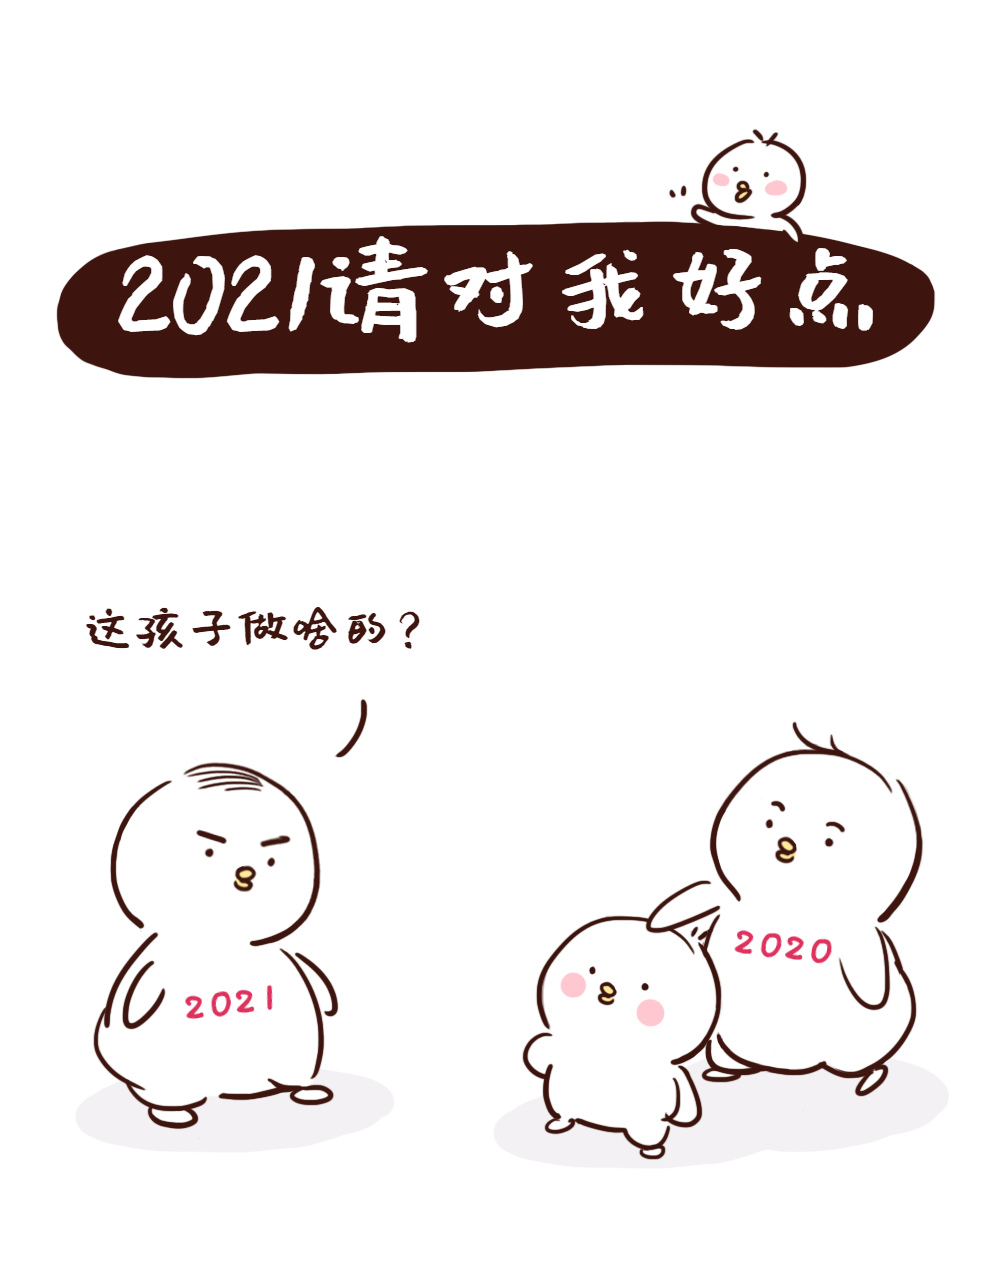 2021你好我是2020请您对ta好一点